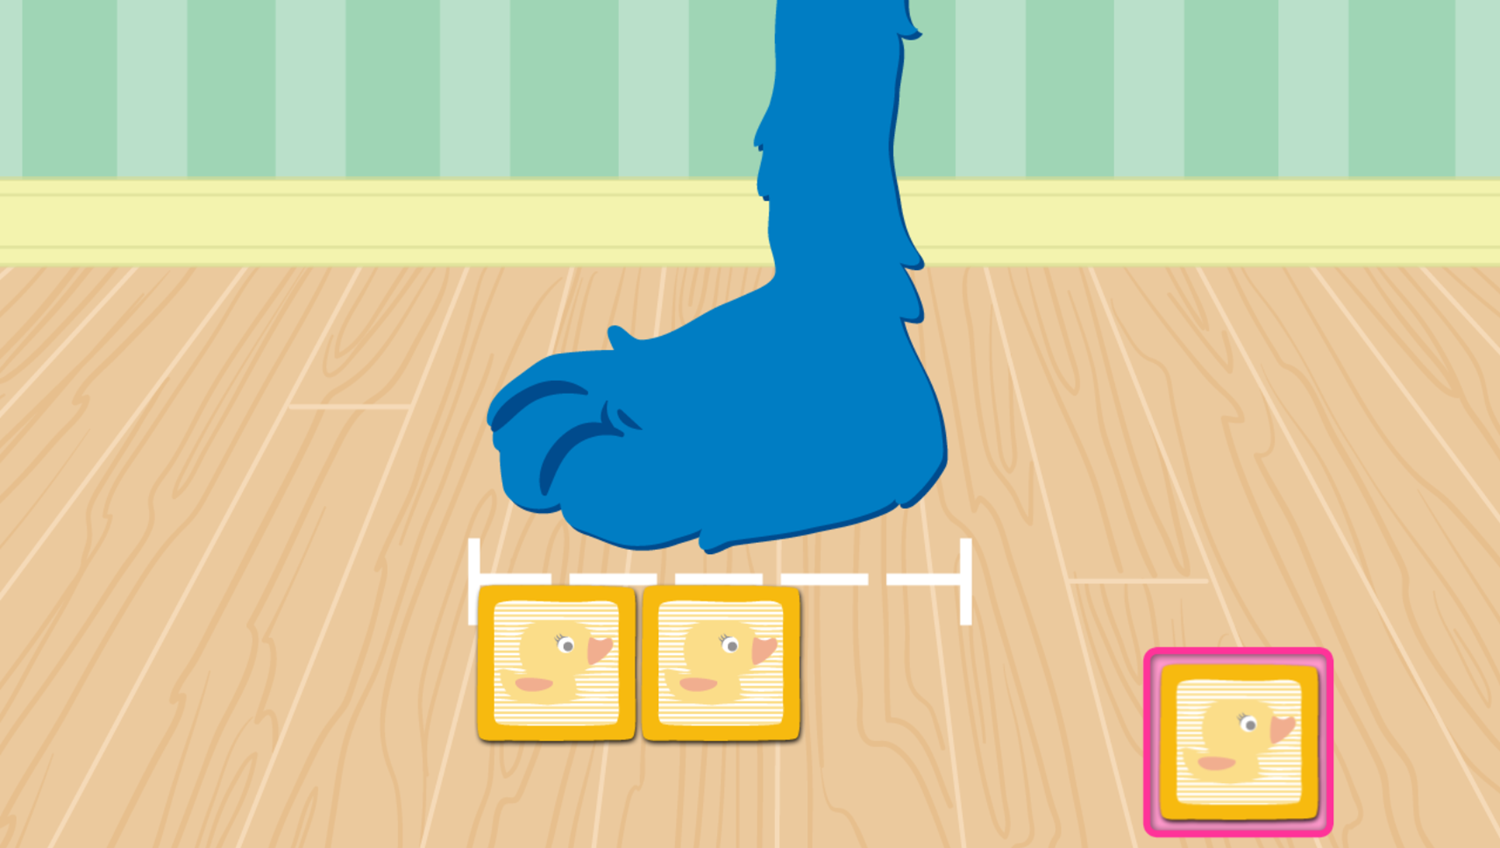 Sesame Street Measure That Foot Game Add Measurements Screenshot.